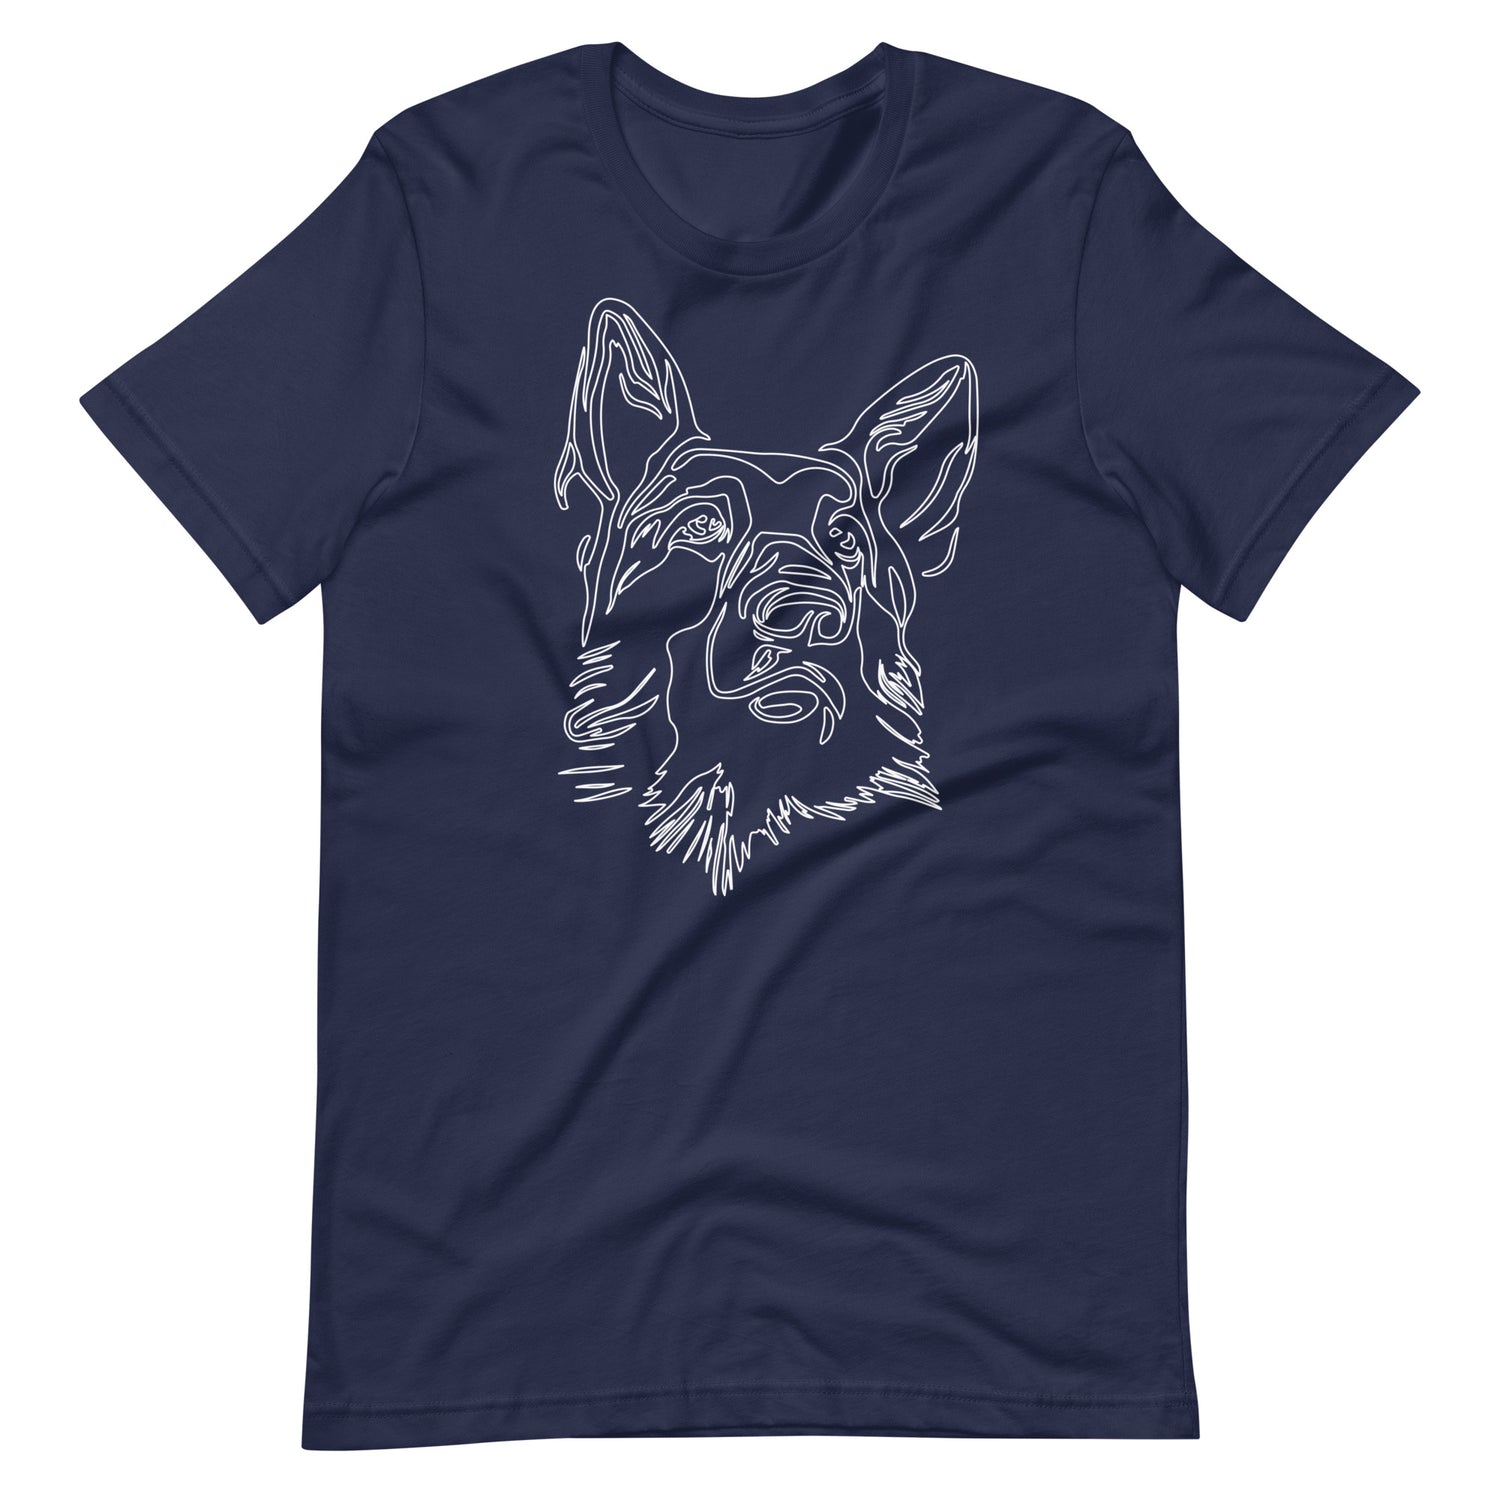 White line German Shepherd face on unisex navy t-shirt